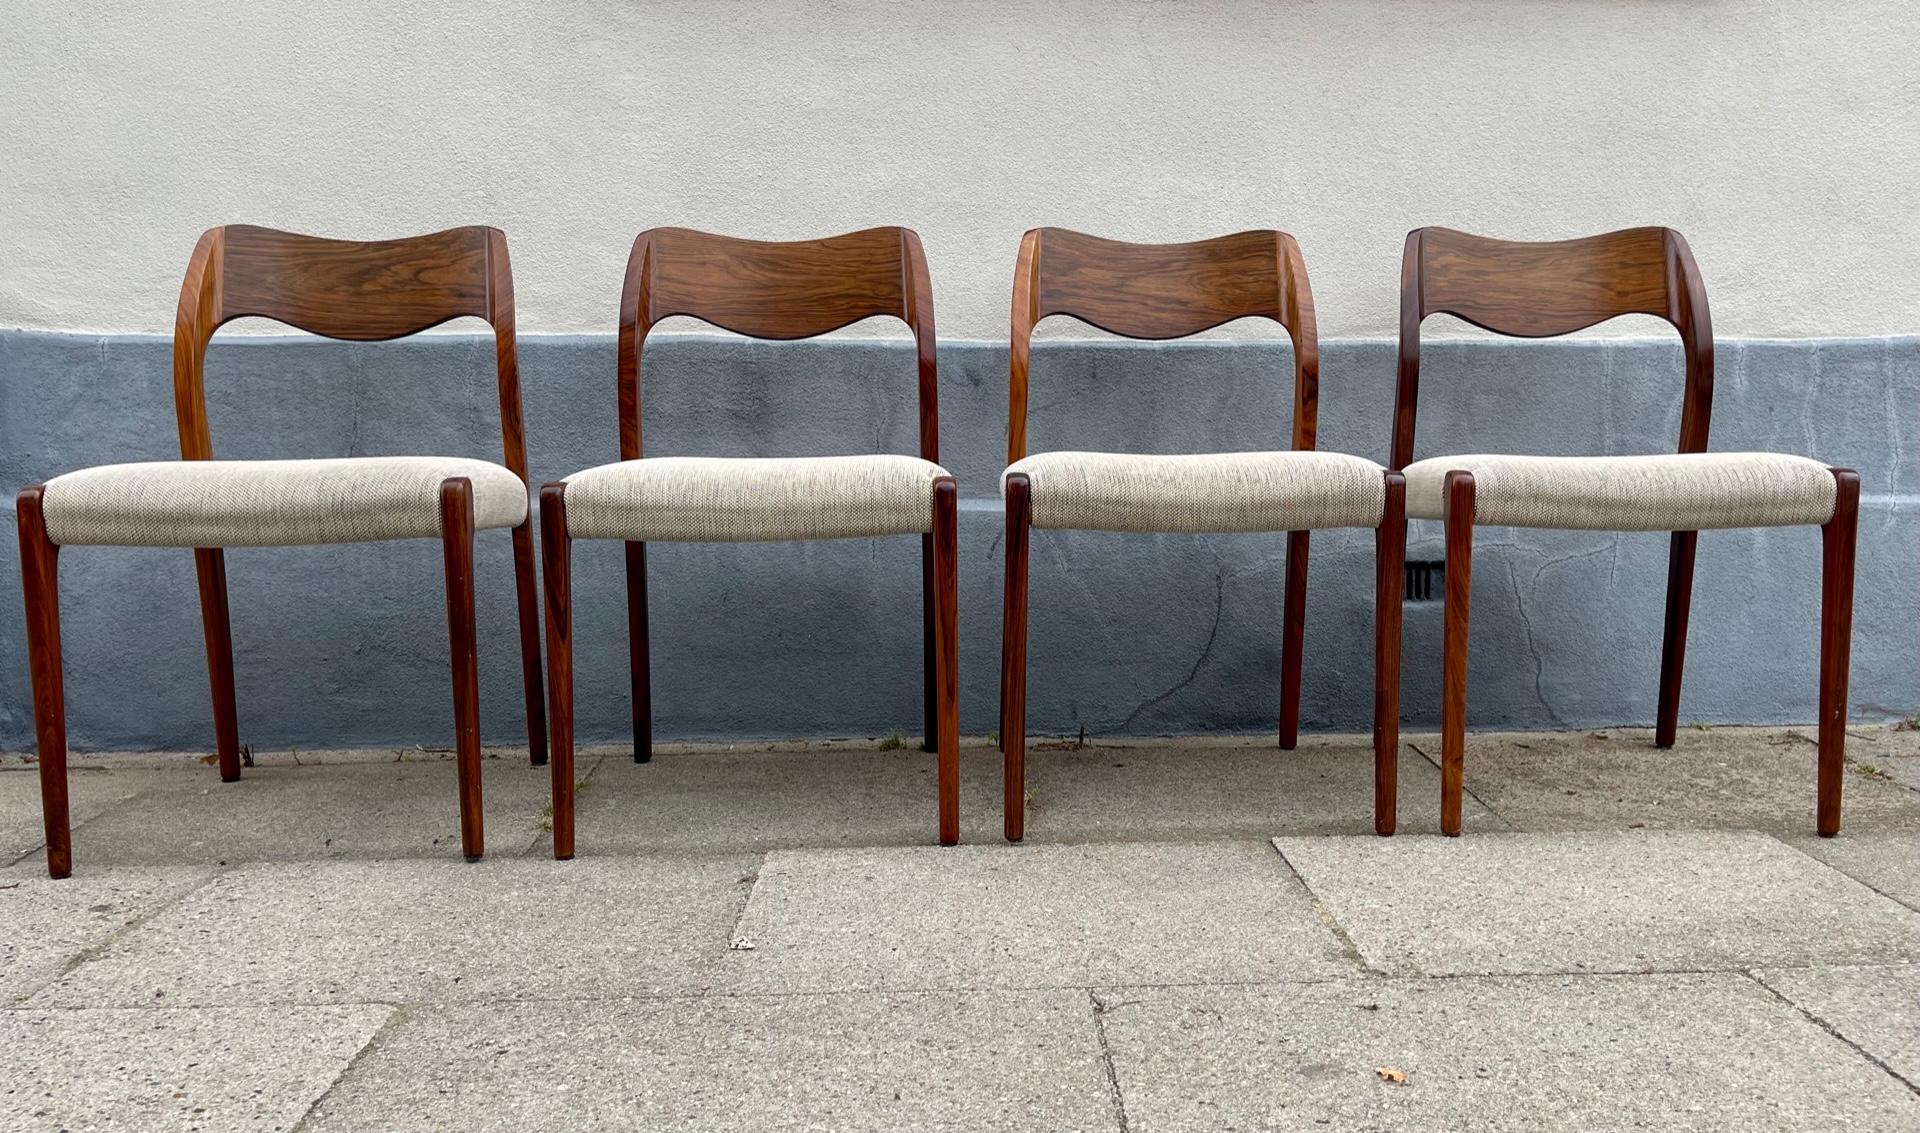 Ein Satz von 4 Esszimmerstühlen Modell 71 aus den 1960er Jahren, entworfen von Niels Otto Møller und hergestellt von J. L Møllers Møbelfabrik um 1960-70. Ungewöhnliche Konfiguration mit Rückenlehnen aus Nussbaumholz. Kürzlich gepolstert mit